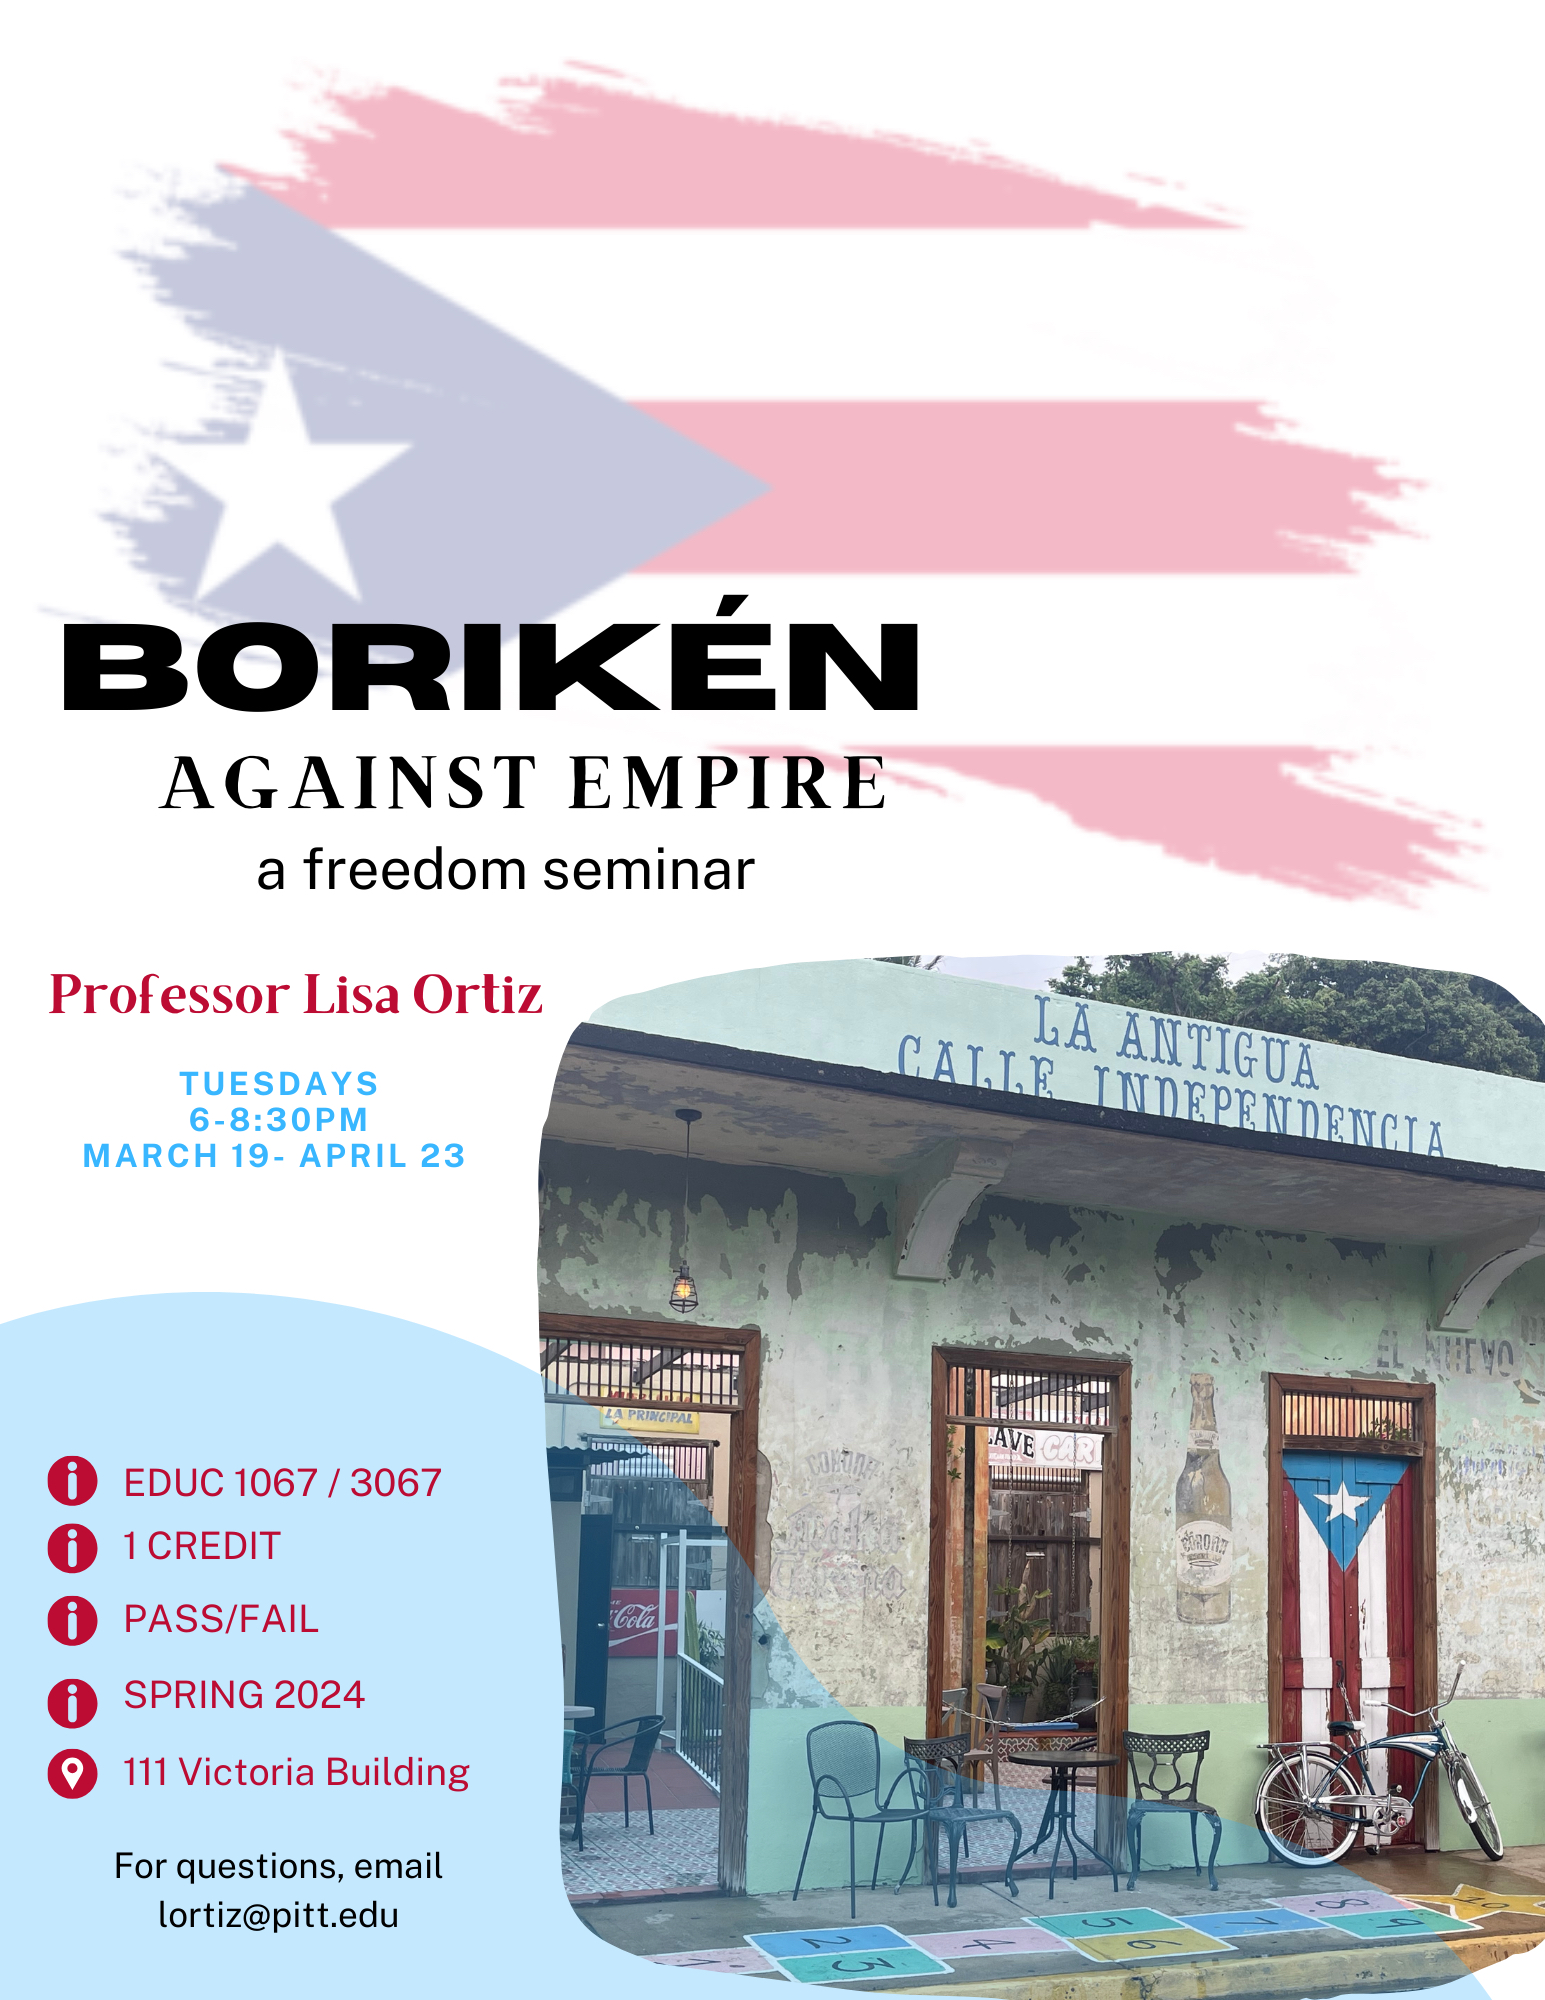 Boriken Against Empire Freedom Seminar flyer